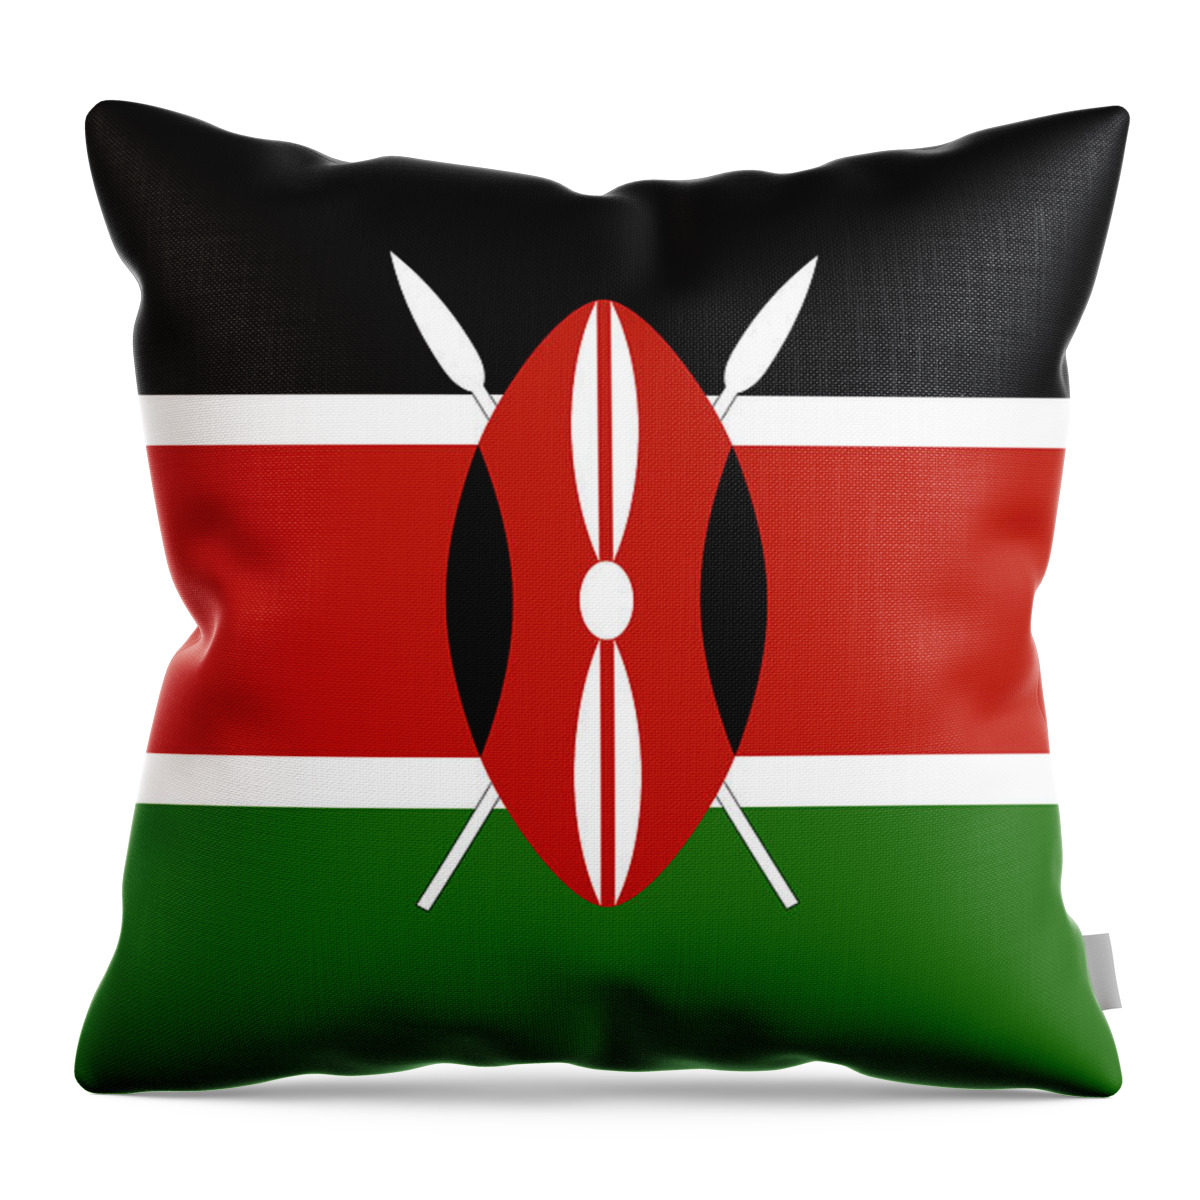 Africa Throw Pillow featuring the digital art Flag of Kenya by Roy Pedersen